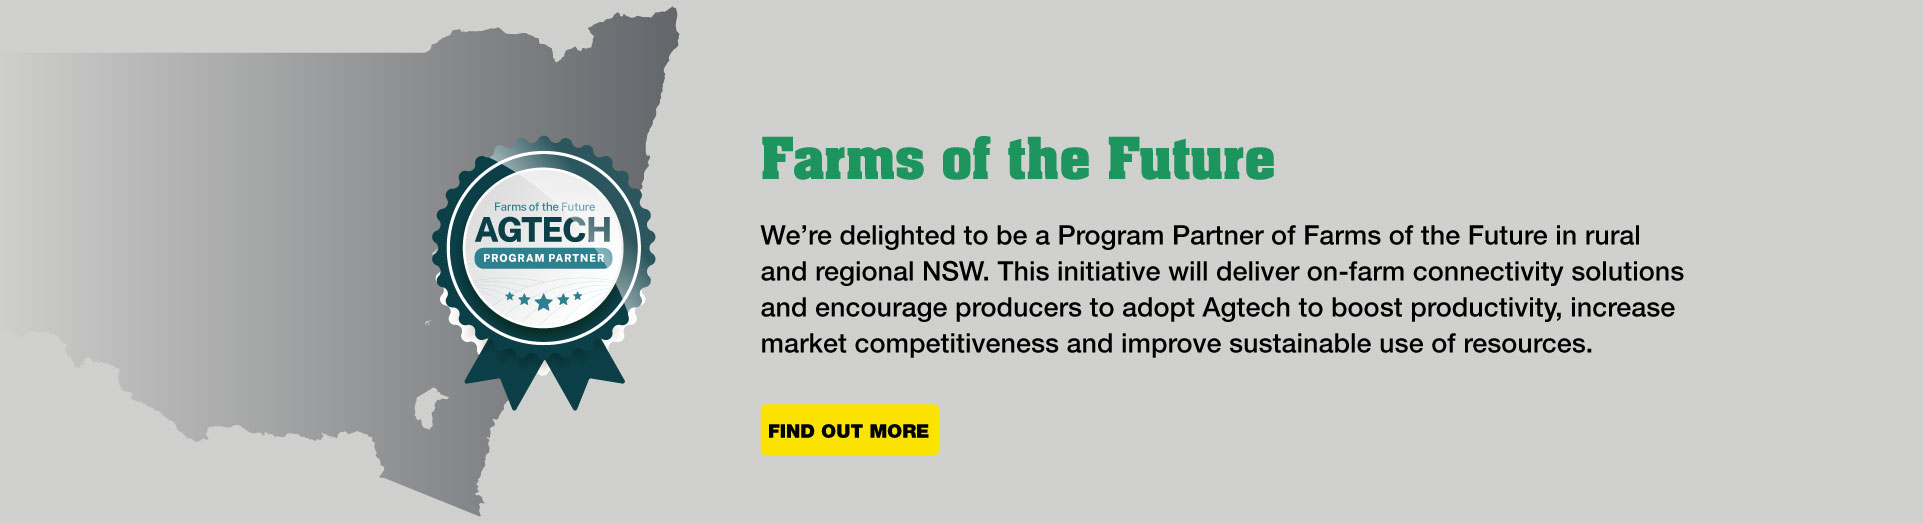 Farms of the Future